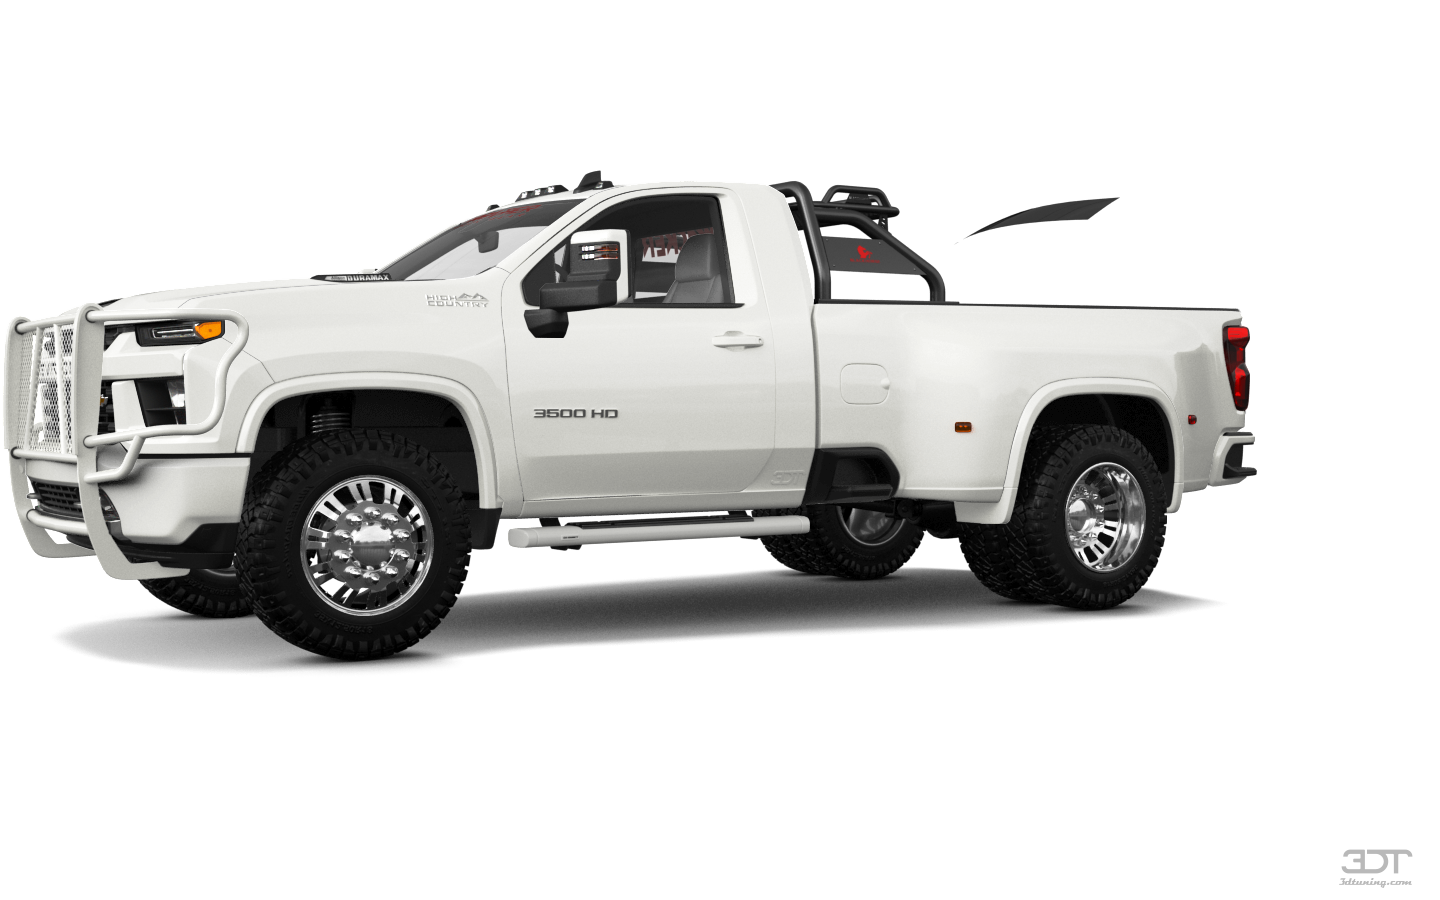 Chevrolet Silverado 3500 HD 2 Door pickup truck 2020